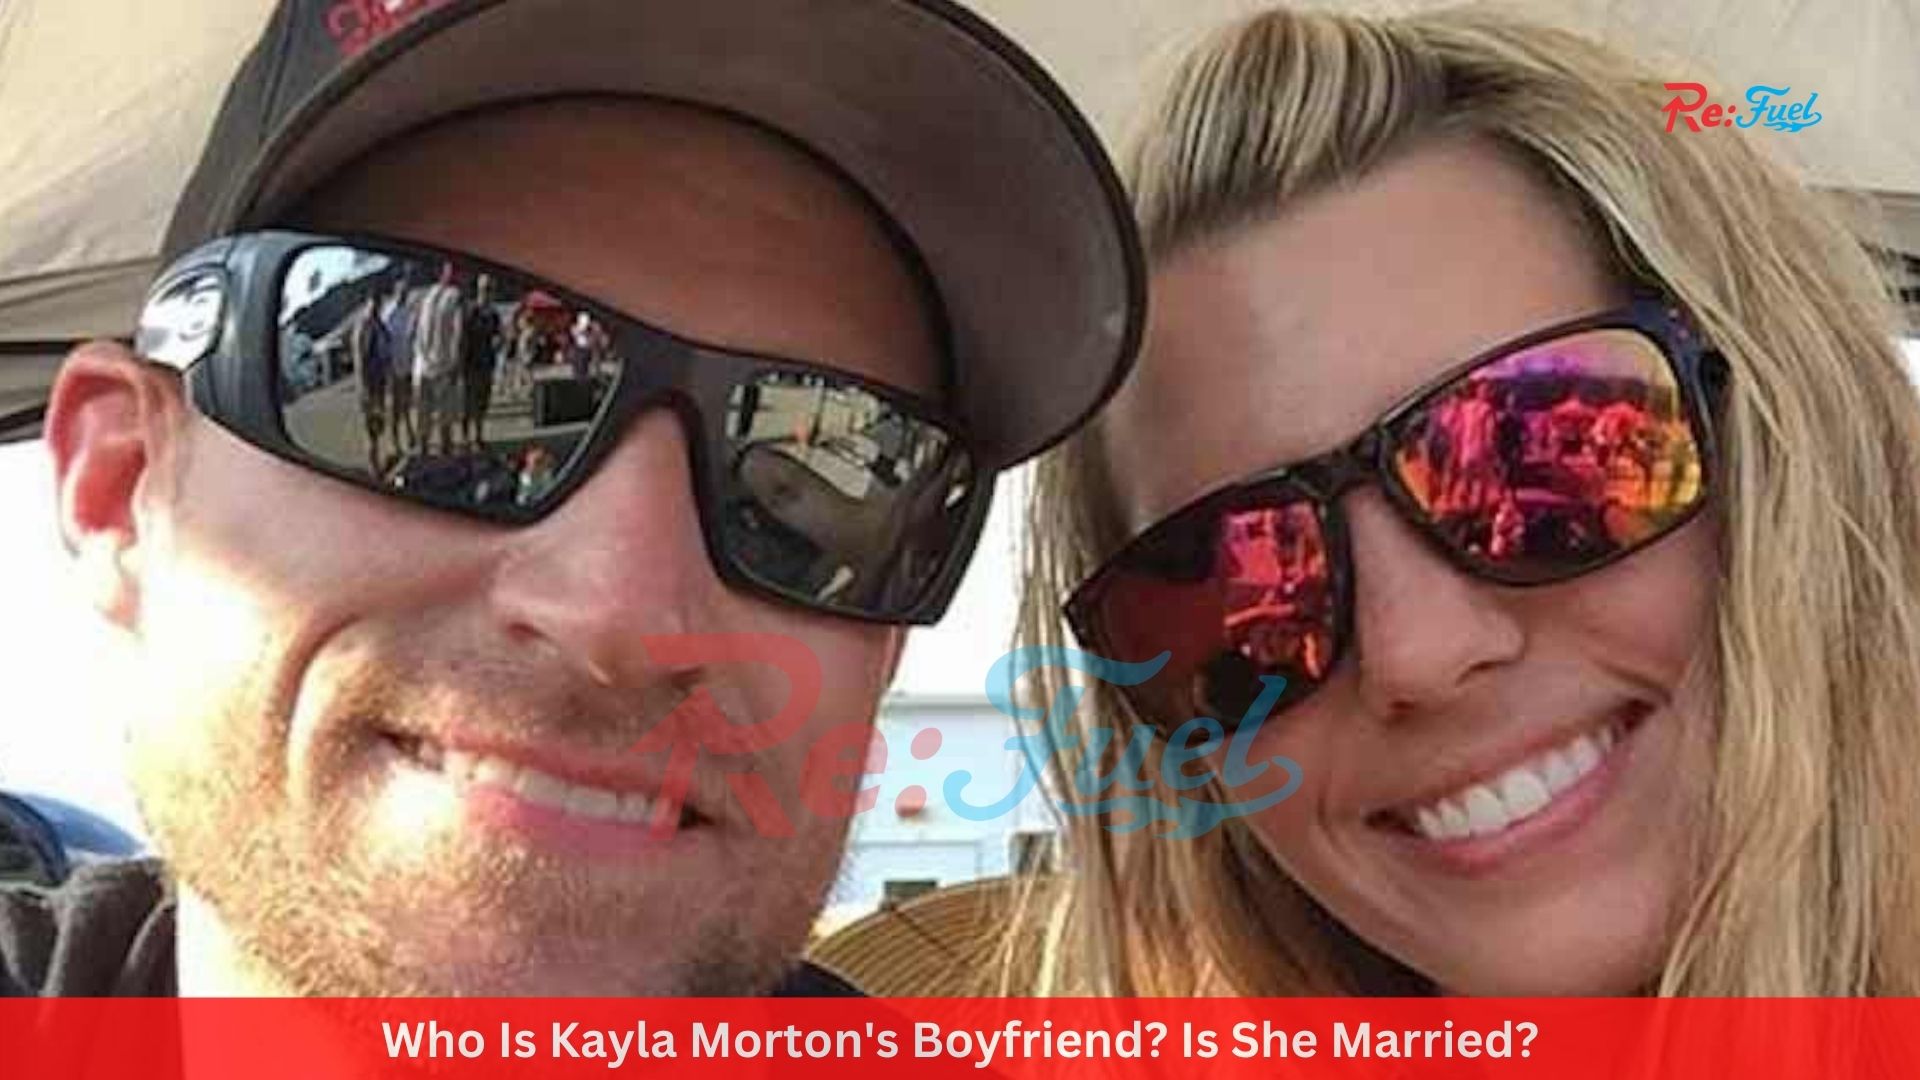 Who Is Kayla Morton's Boyfriend? Is She Married?